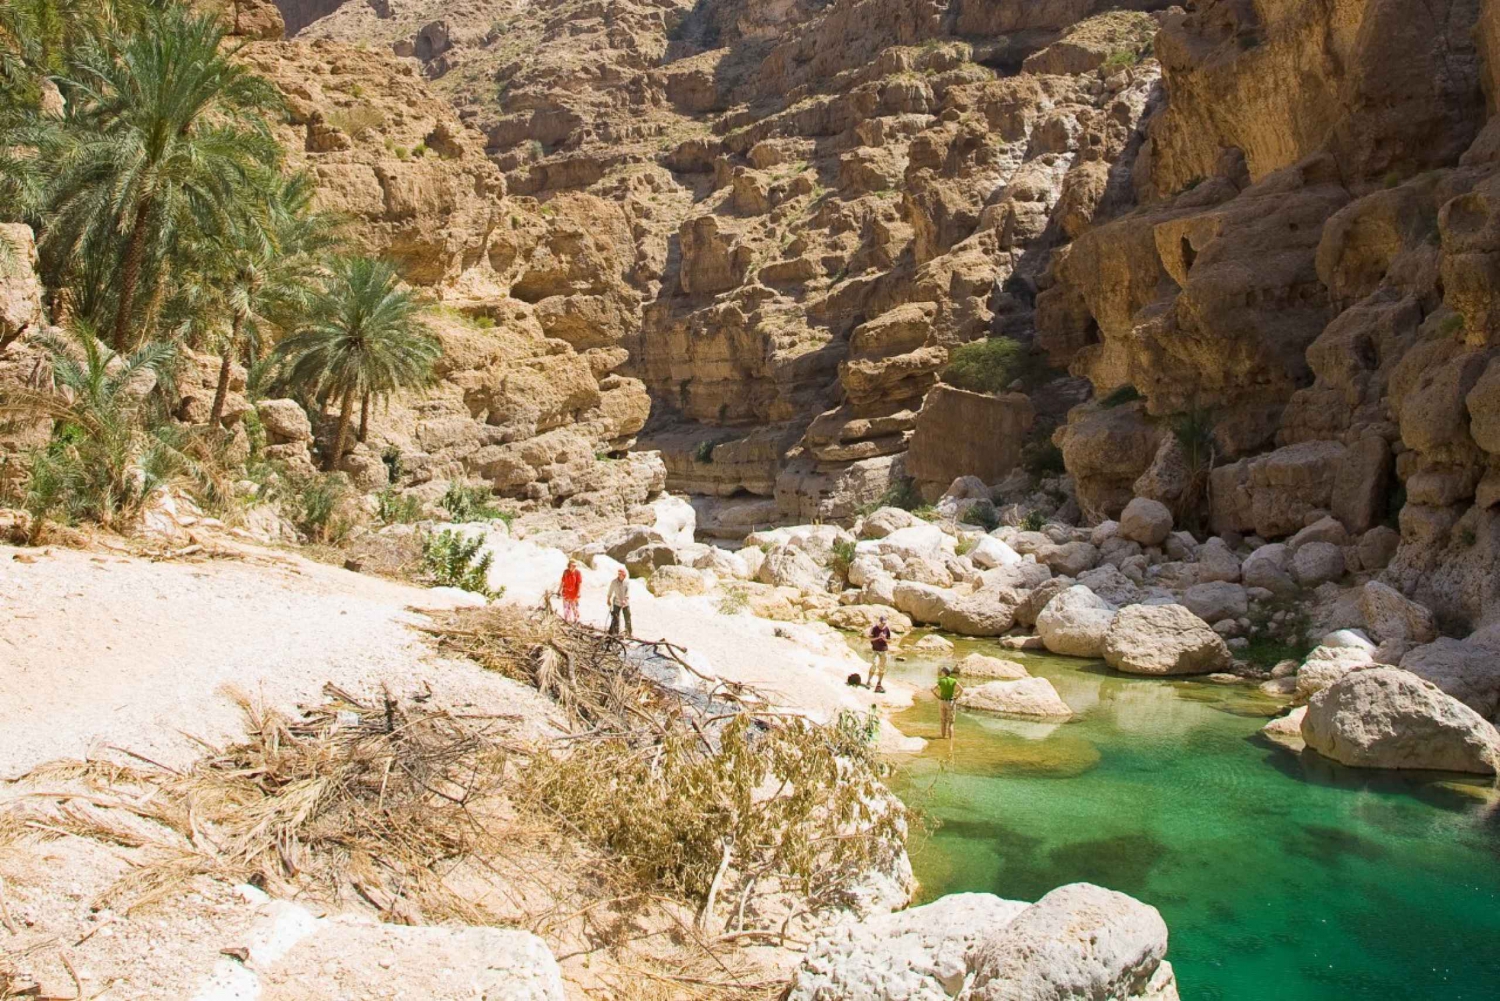 Kokopäiväretki: Wadi Shab&Sinkhole Tour- Tutustu luonnon ihmeeseen